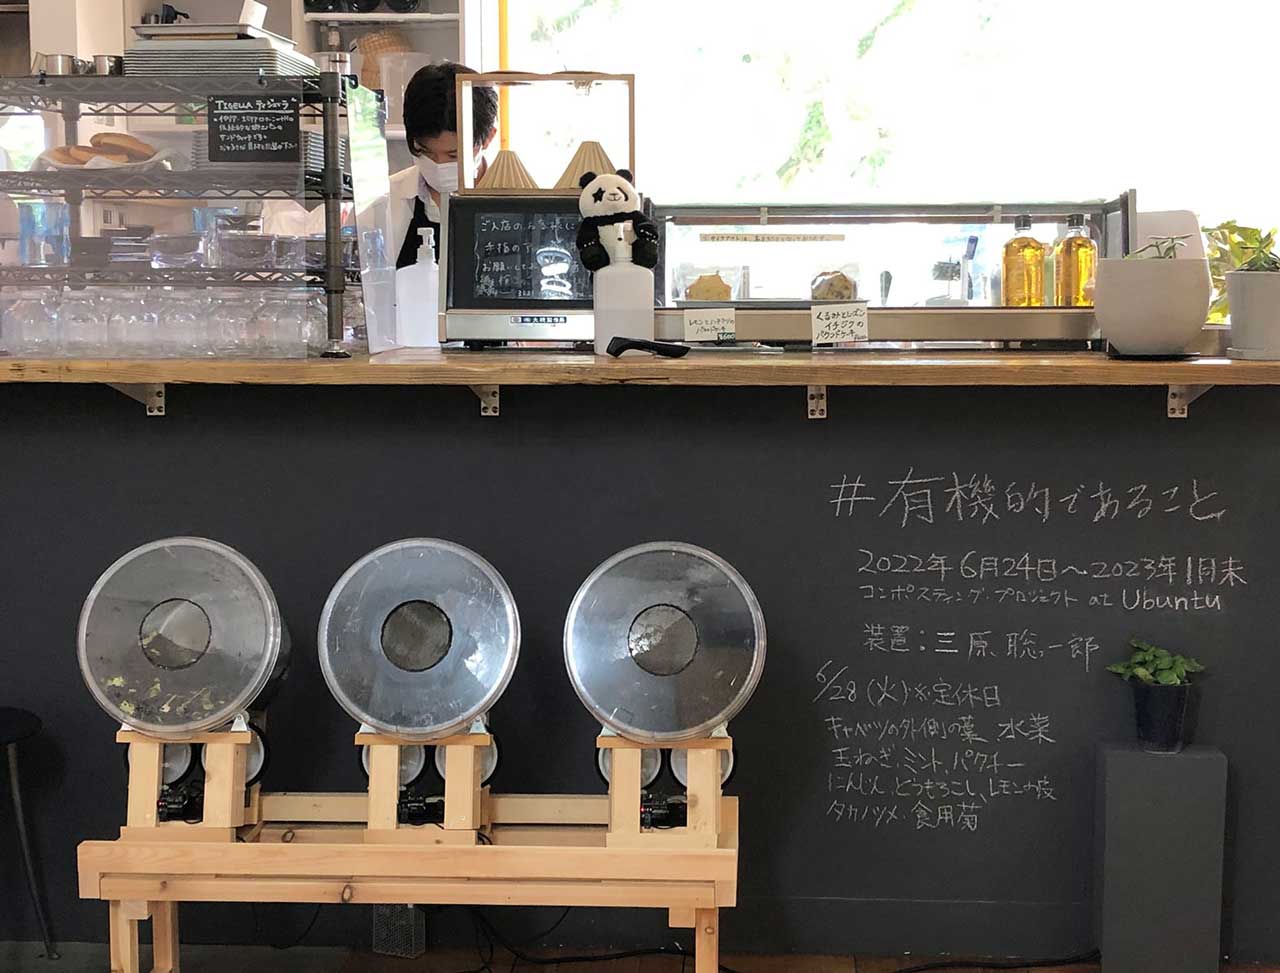 有機的であること composting project at 3331 cafe Ubuntu 装置：三原 聡一郎 Soichiro Mihara